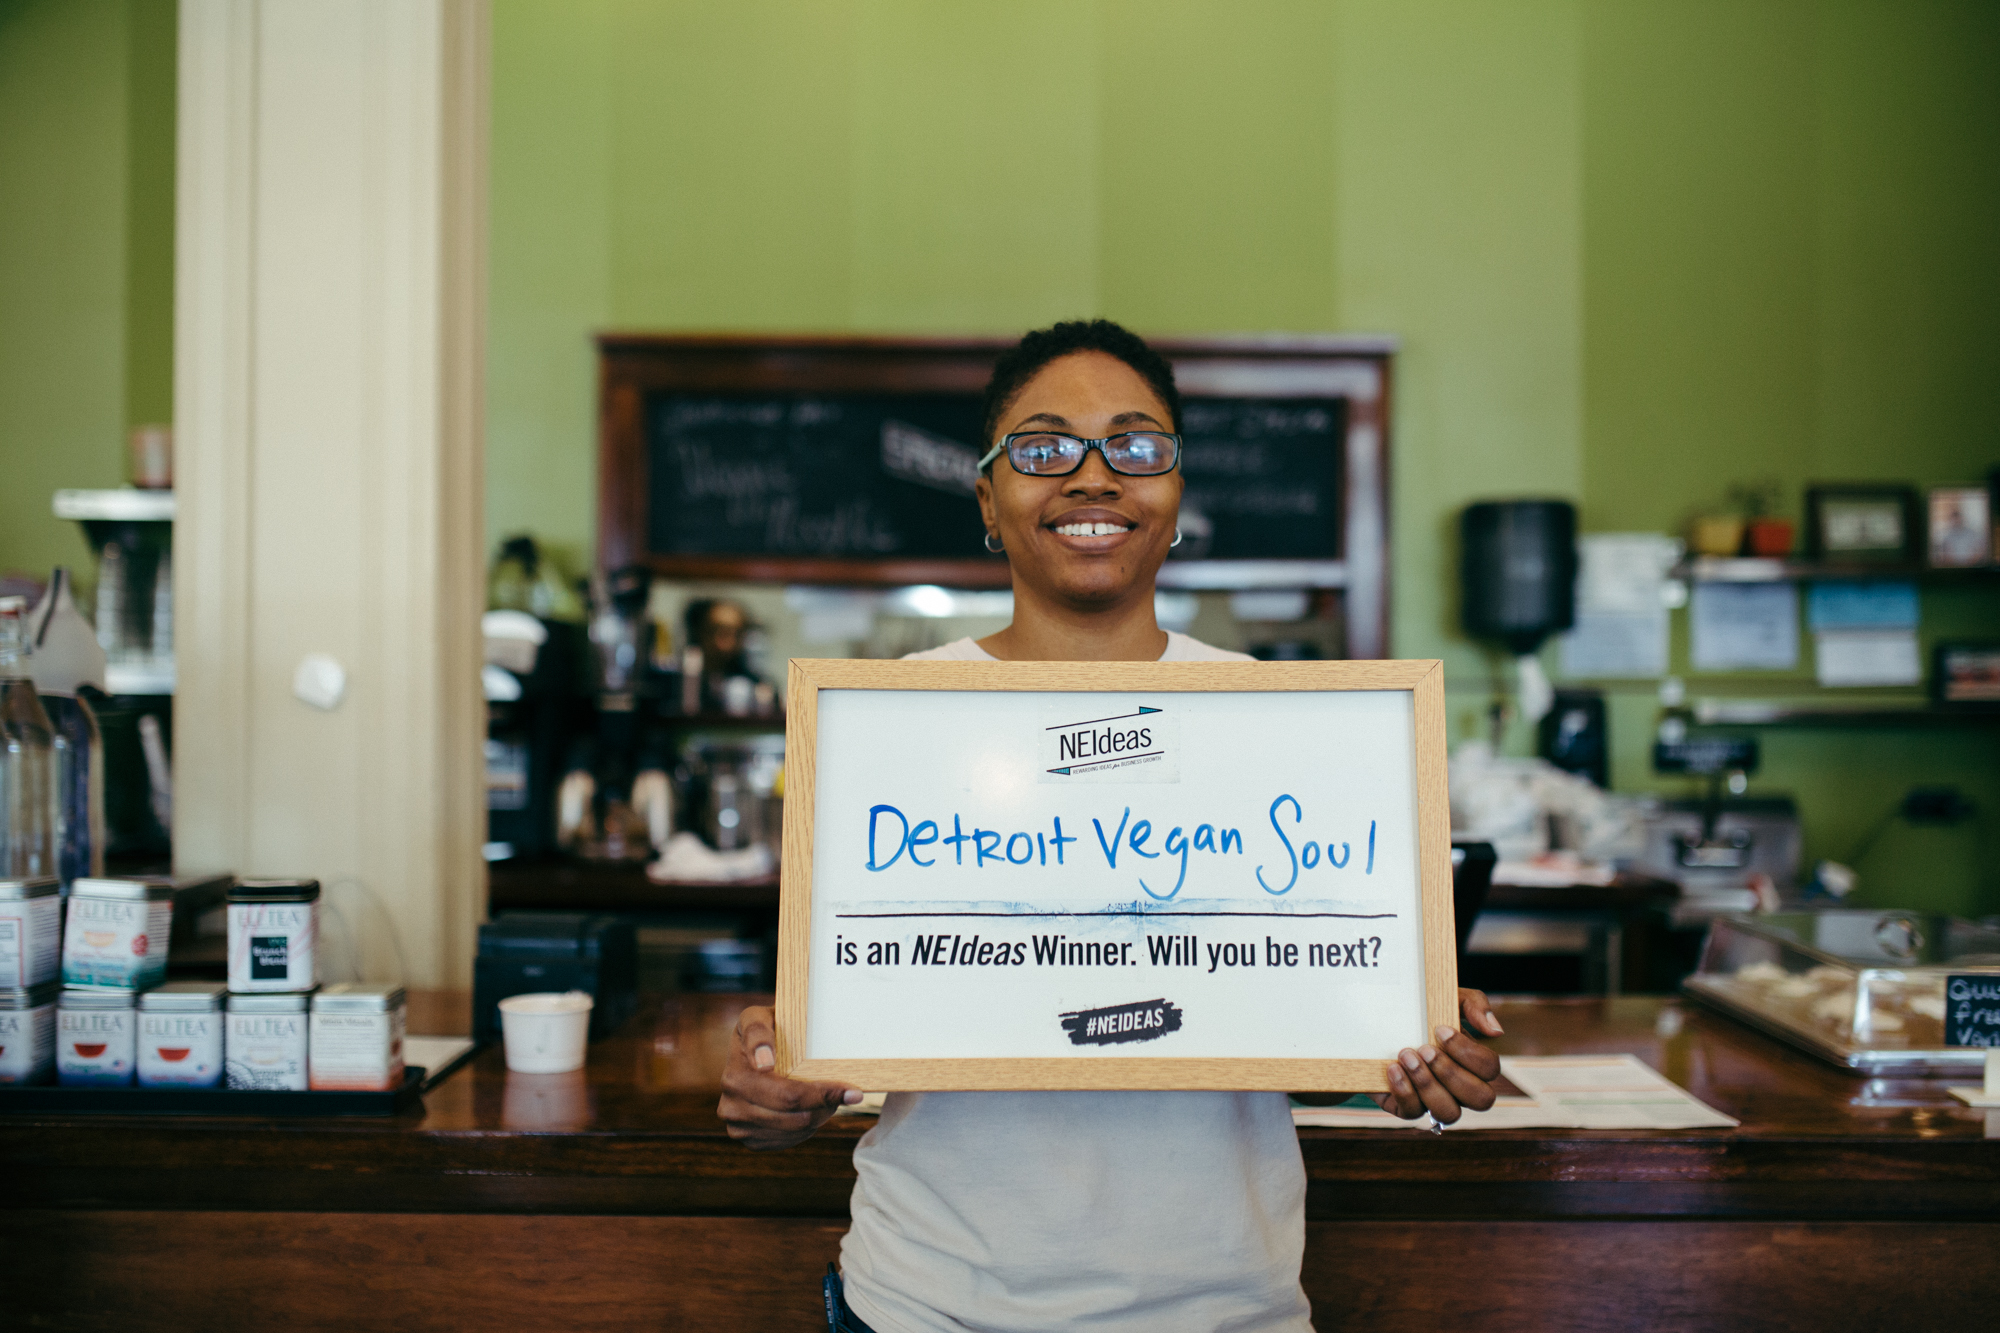 Past winner Detroit Vegan Soul